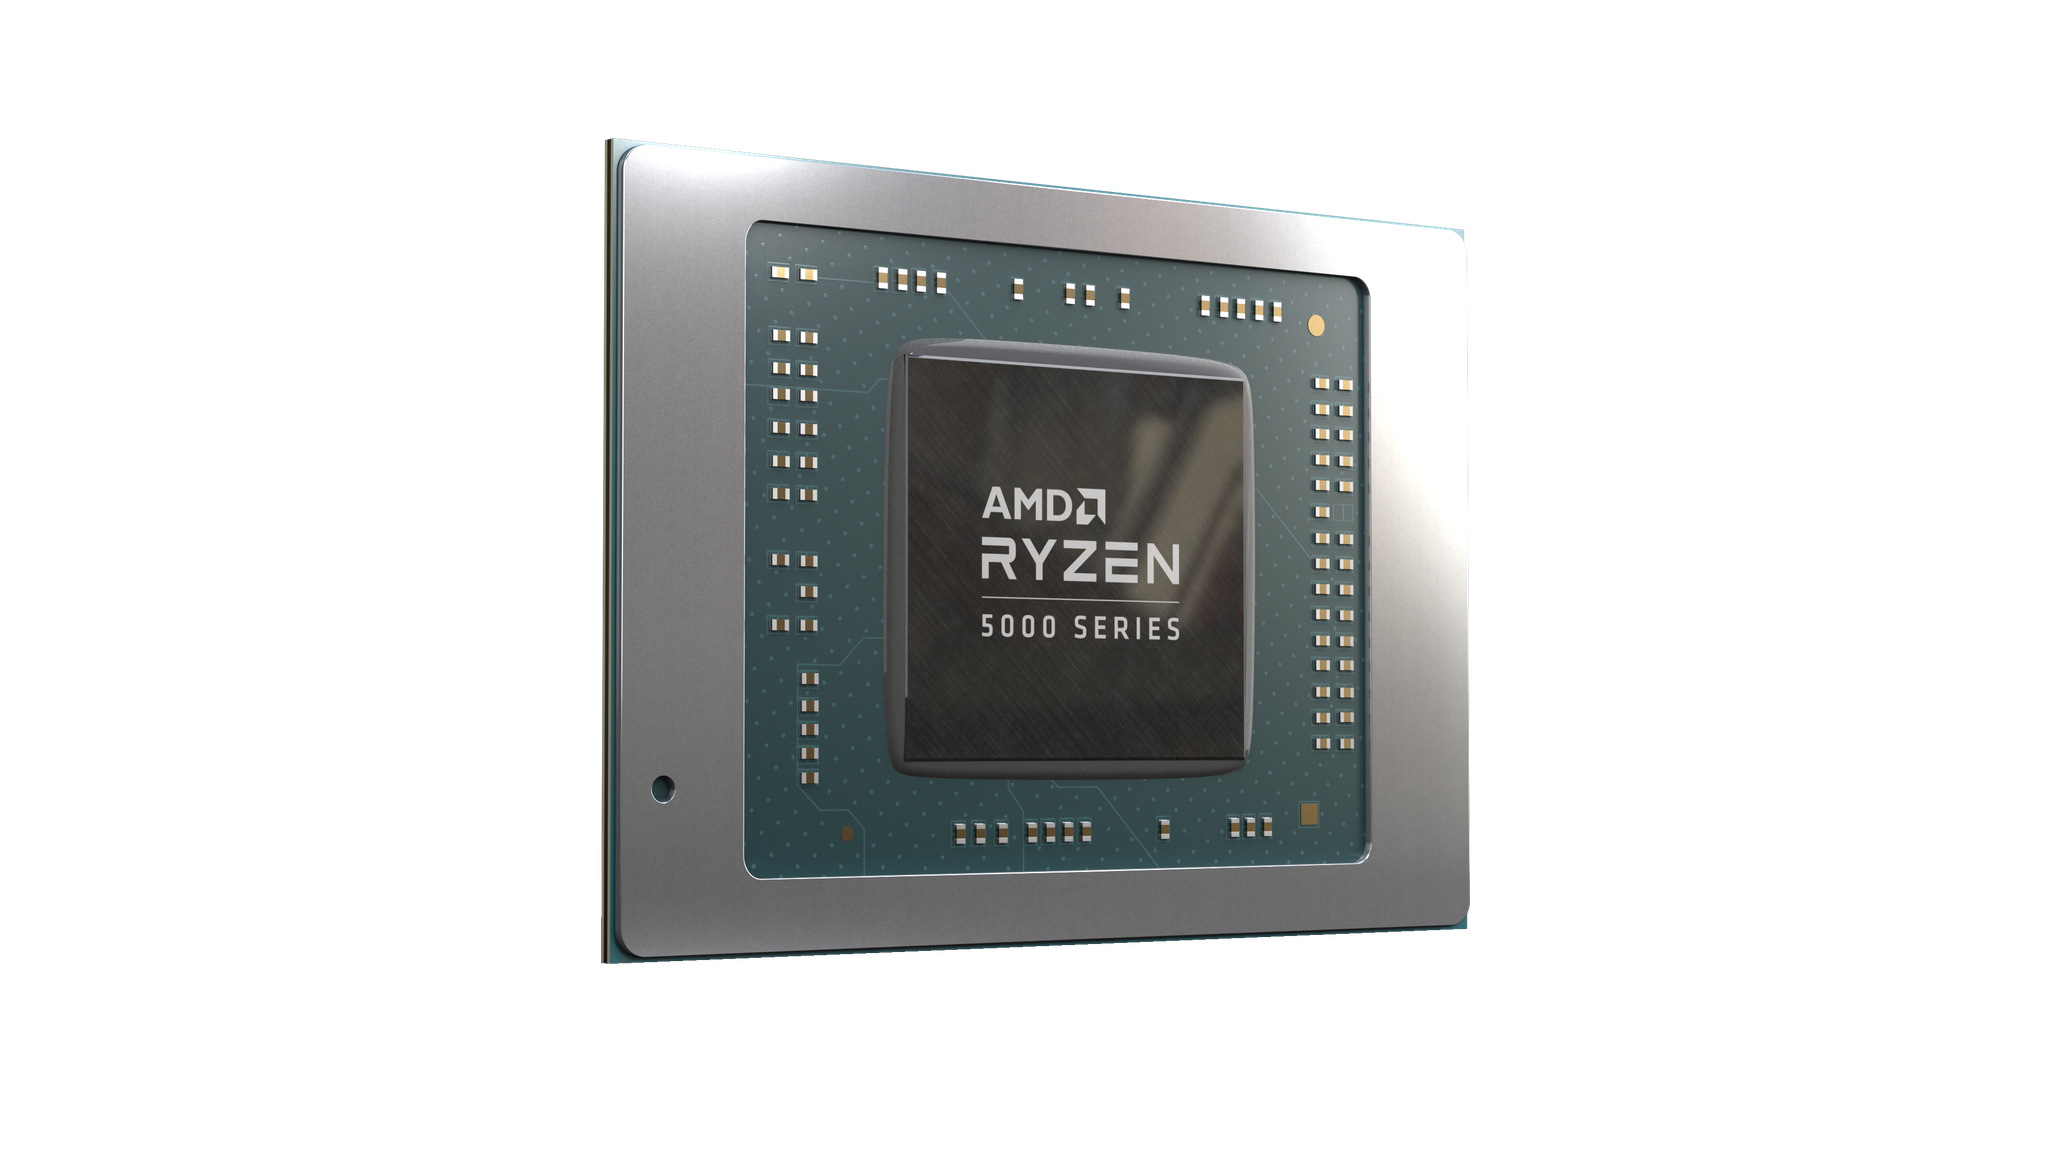 blsxttlg AMD ประกาศเปิดตัวโมบายล์โปรเซสเซอร์ ที่ดีที่สุดในโลกในงาน CES 2021